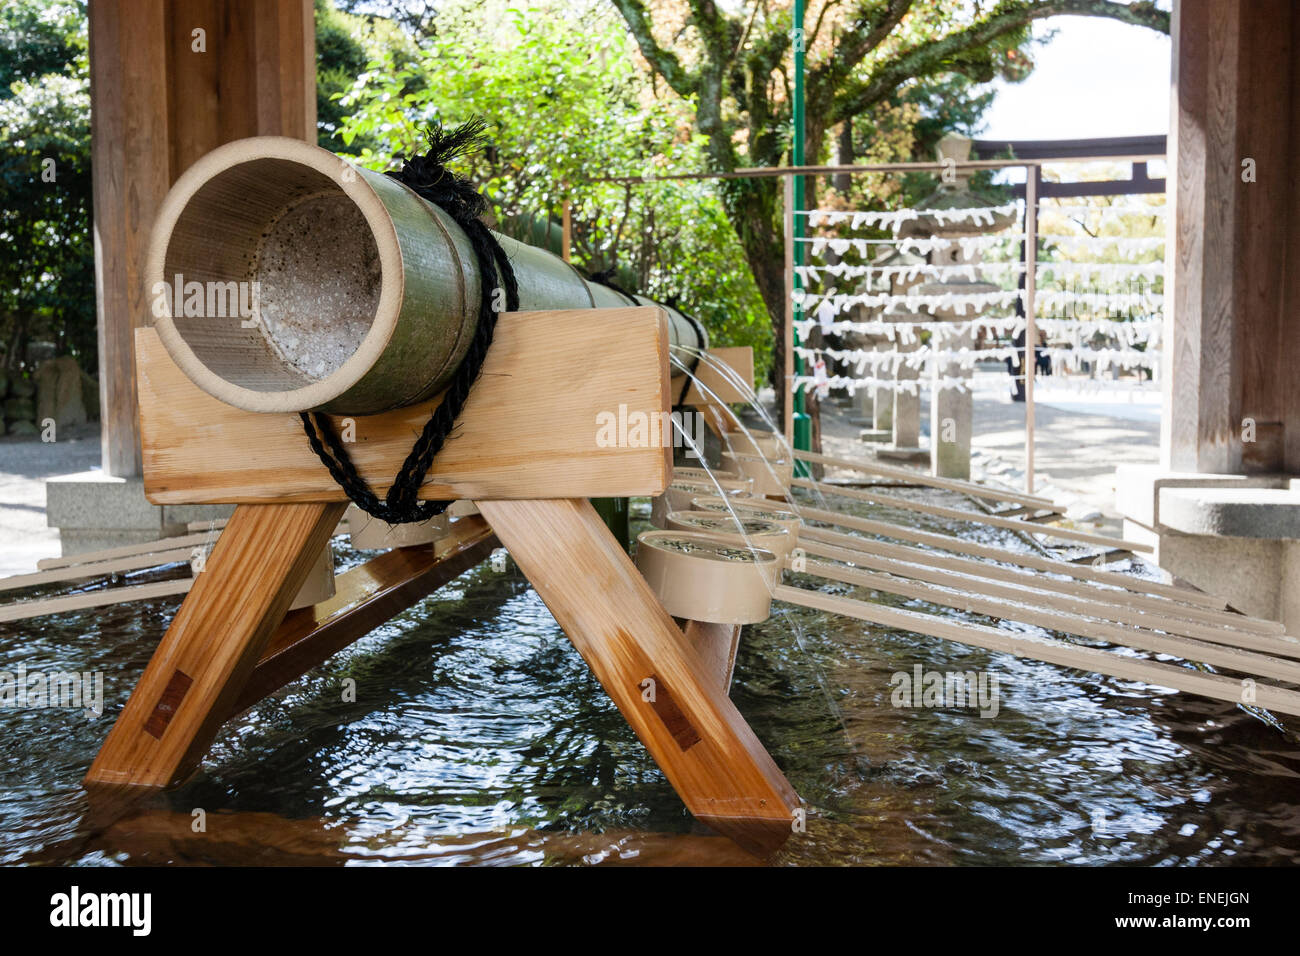 Primo piano i mestoli e il tubo di bambù su un trespolo, con l'acqua che versa dai fori nel carattere chozuya di purificazione dell'acqua in un santuario giapponese Shinto. Foto Stock